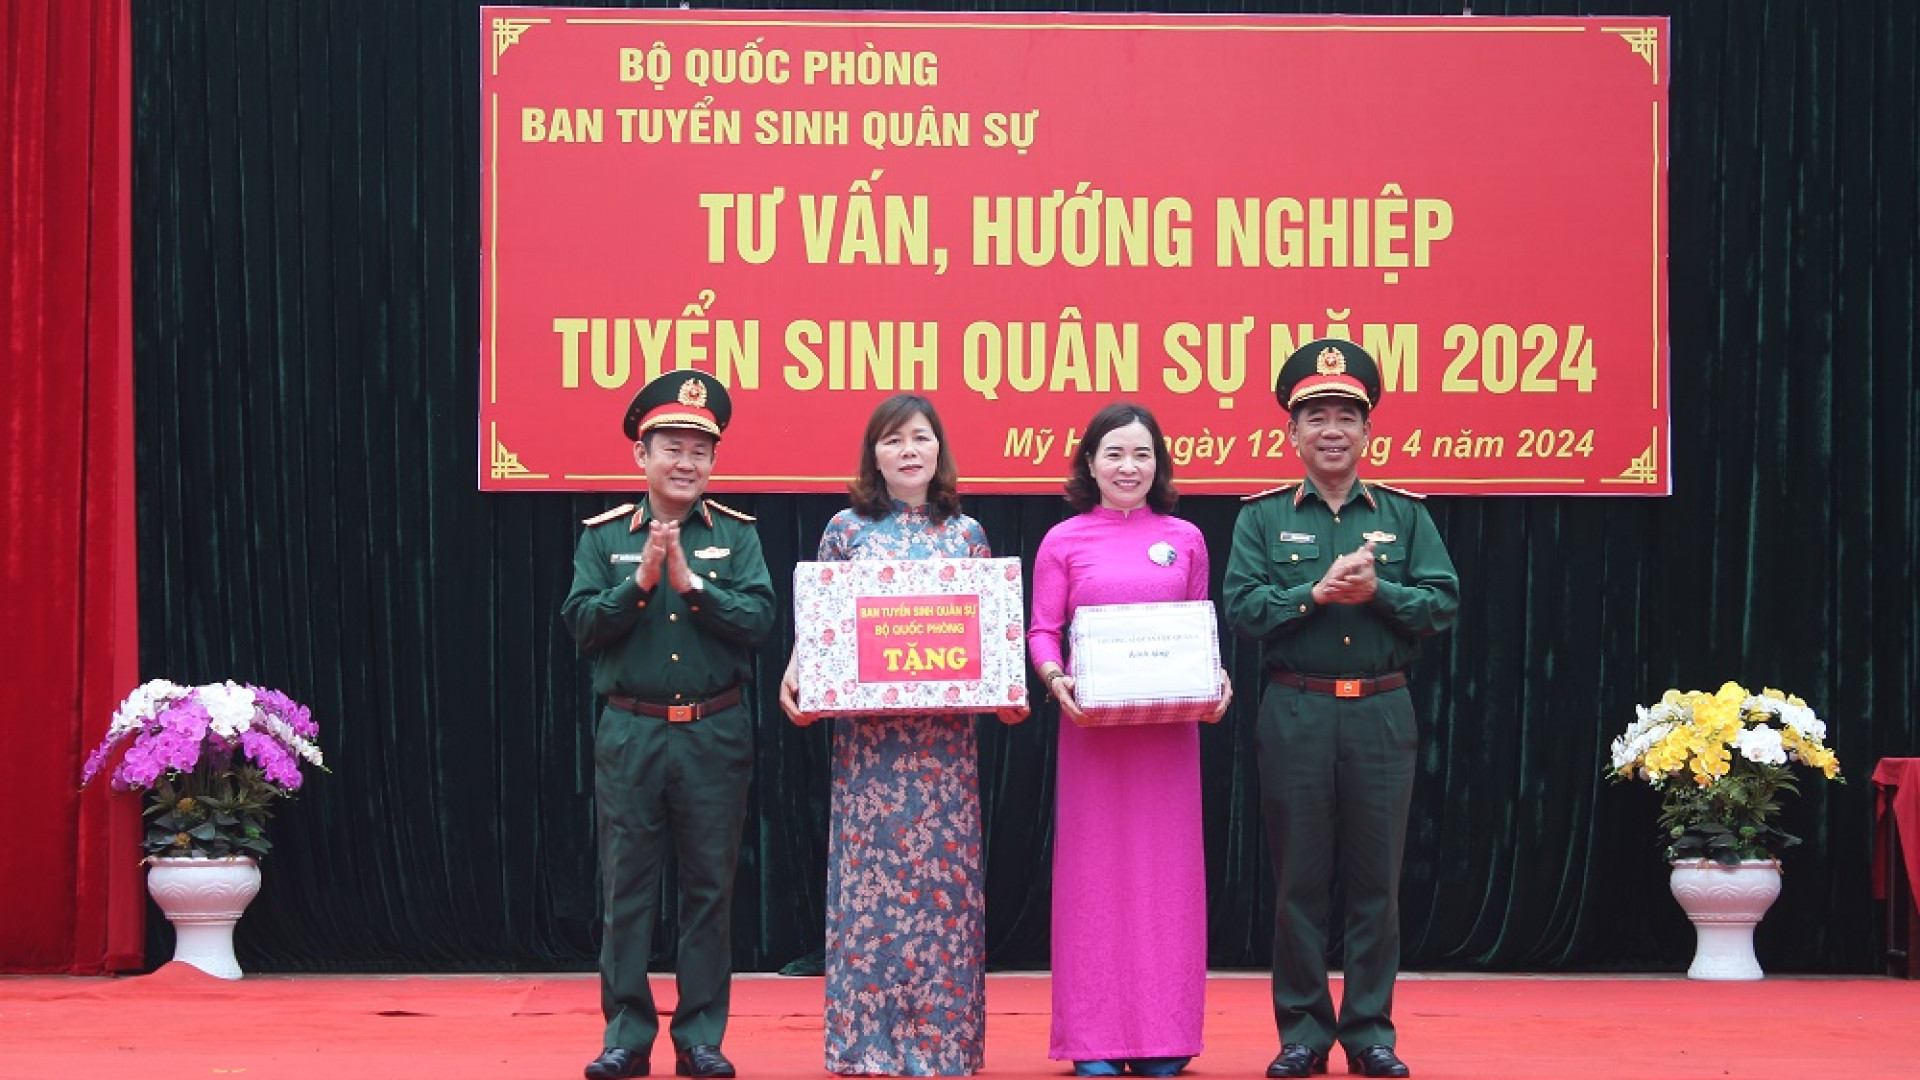 Ban tuyển sinh quân sự Bộ Quốc phòng kiểm tra công tác tuyển sinh quân sự tại tỉnh Hưng Yên